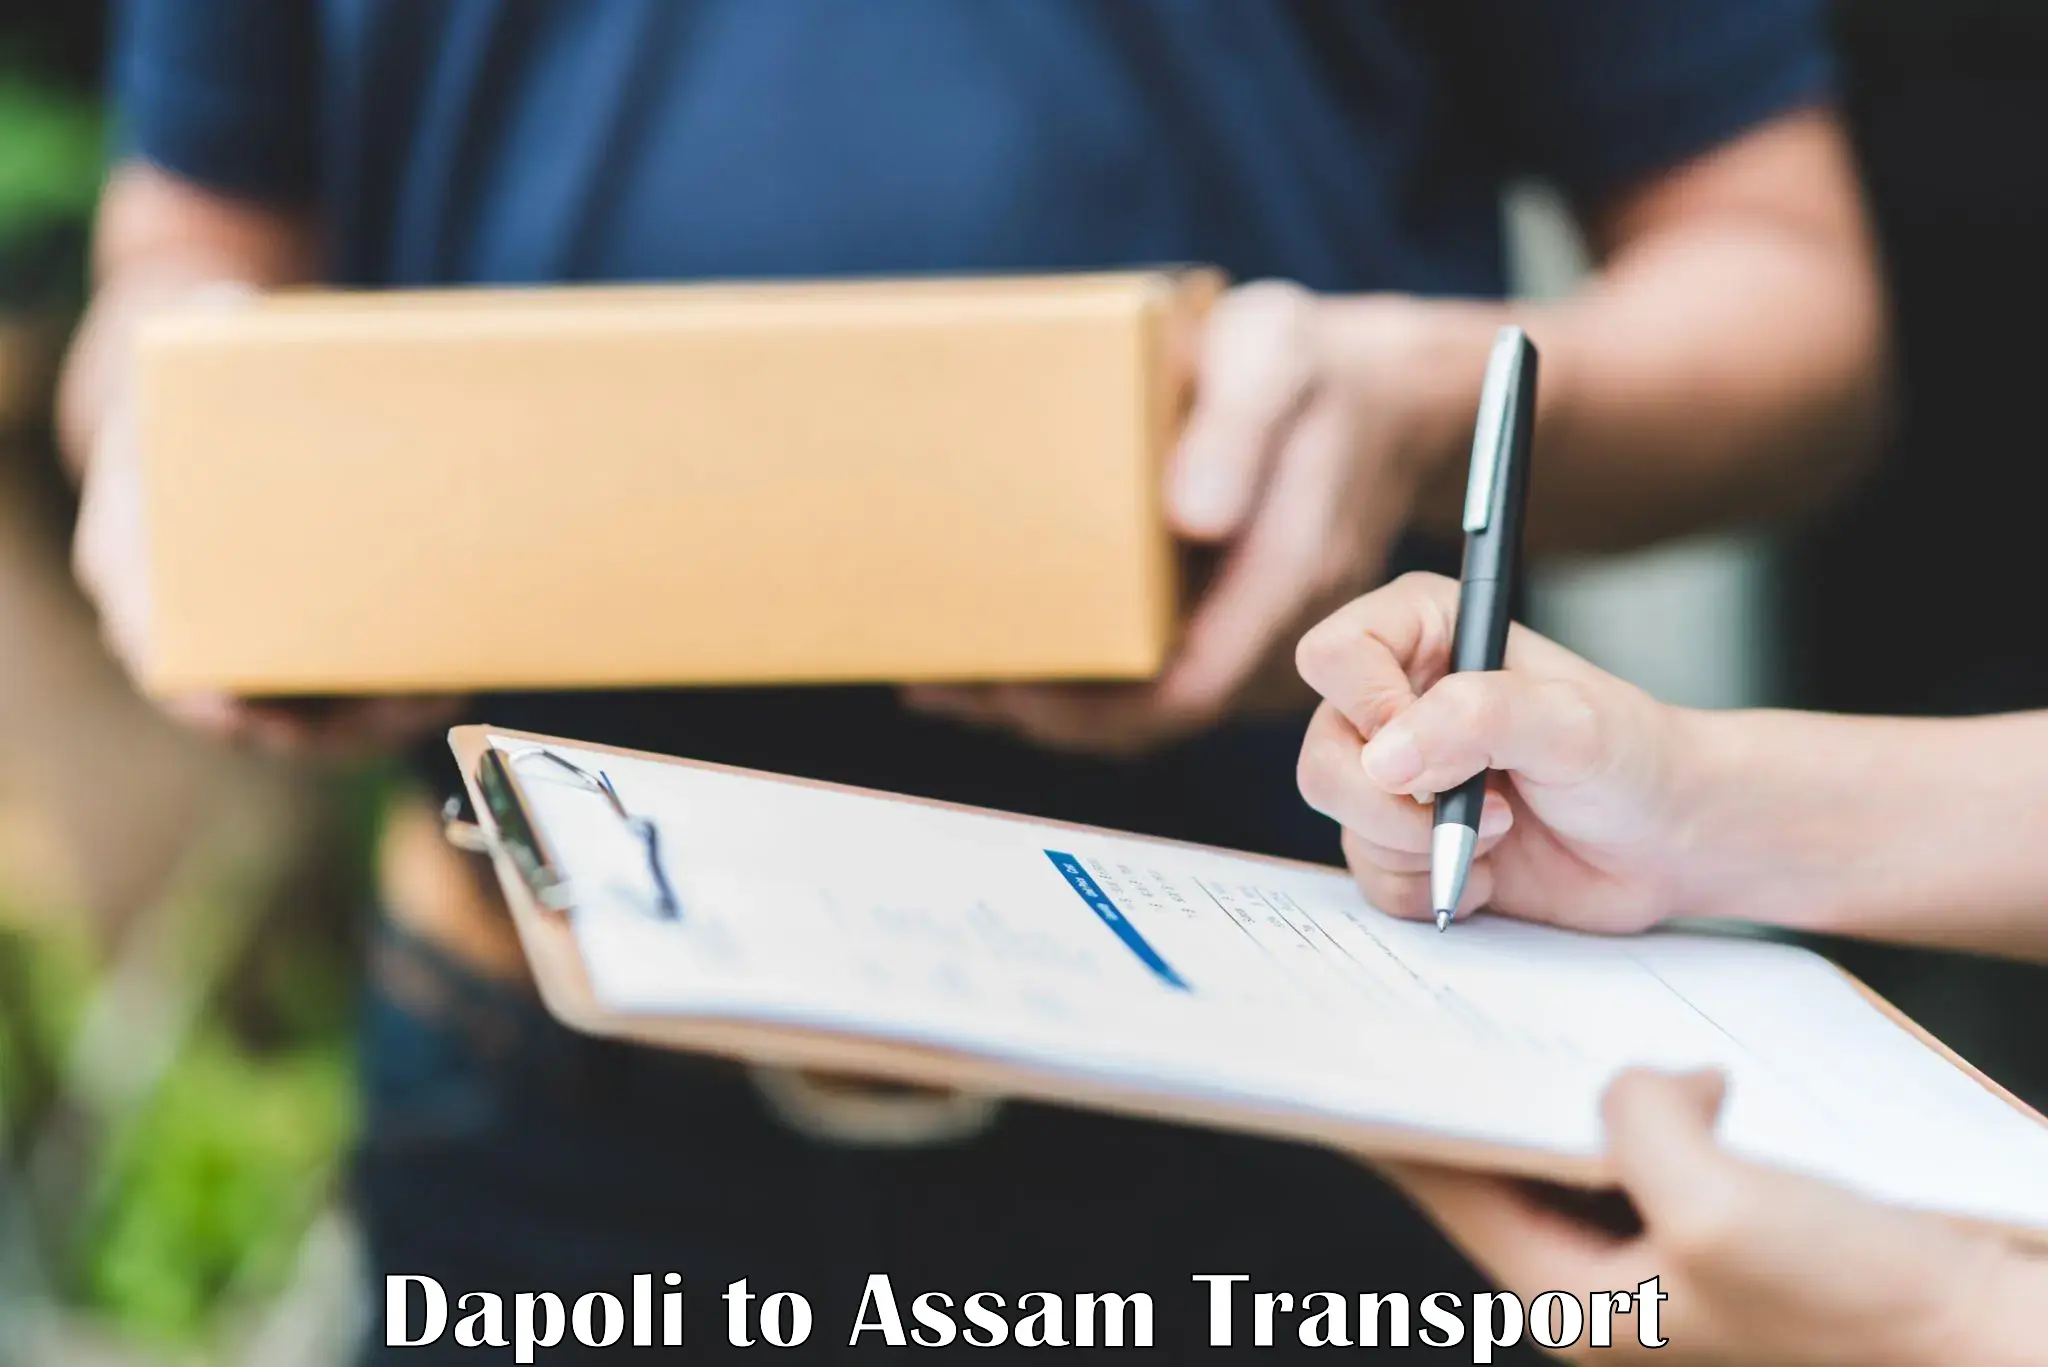 Lorry transport service Dapoli to Dhupdhara